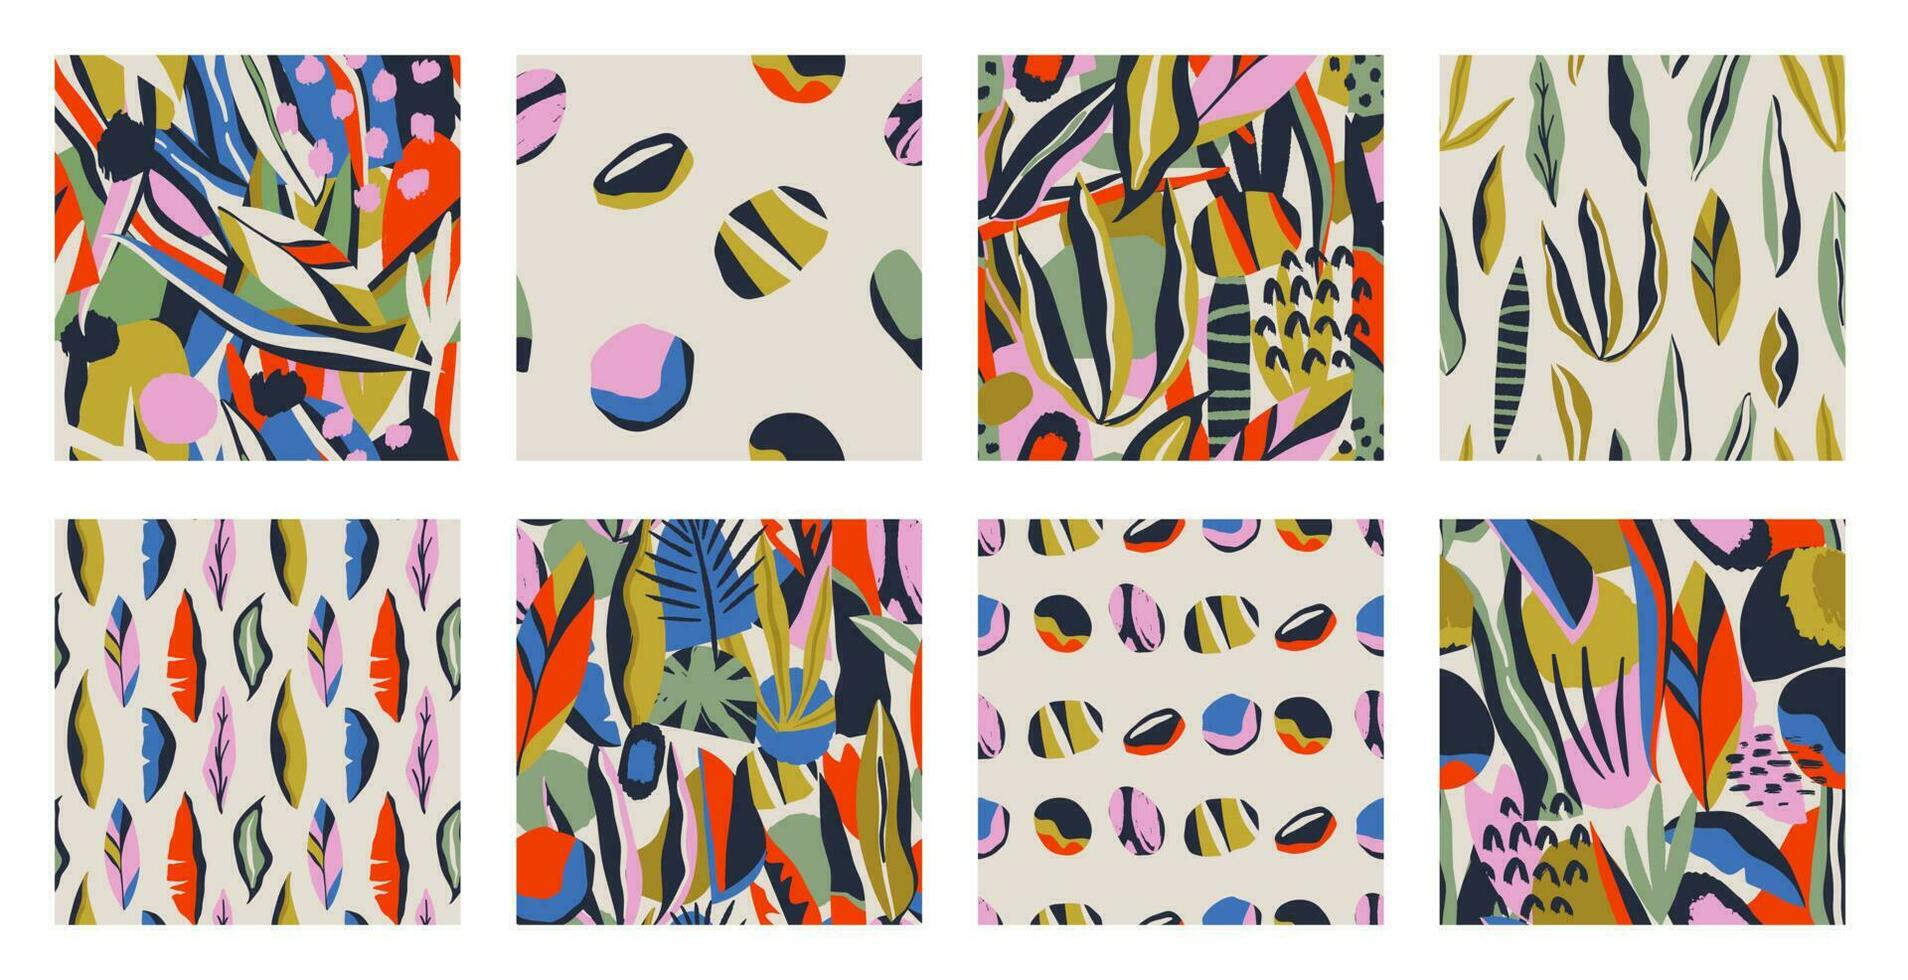 conjunto de patrones sin fisuras contemporáneos abstractos con formas dibujadas a mano, manchas, puntos y líneas con texturas. estampado bohemio vibrante. Ilustración de vector de collage moderno